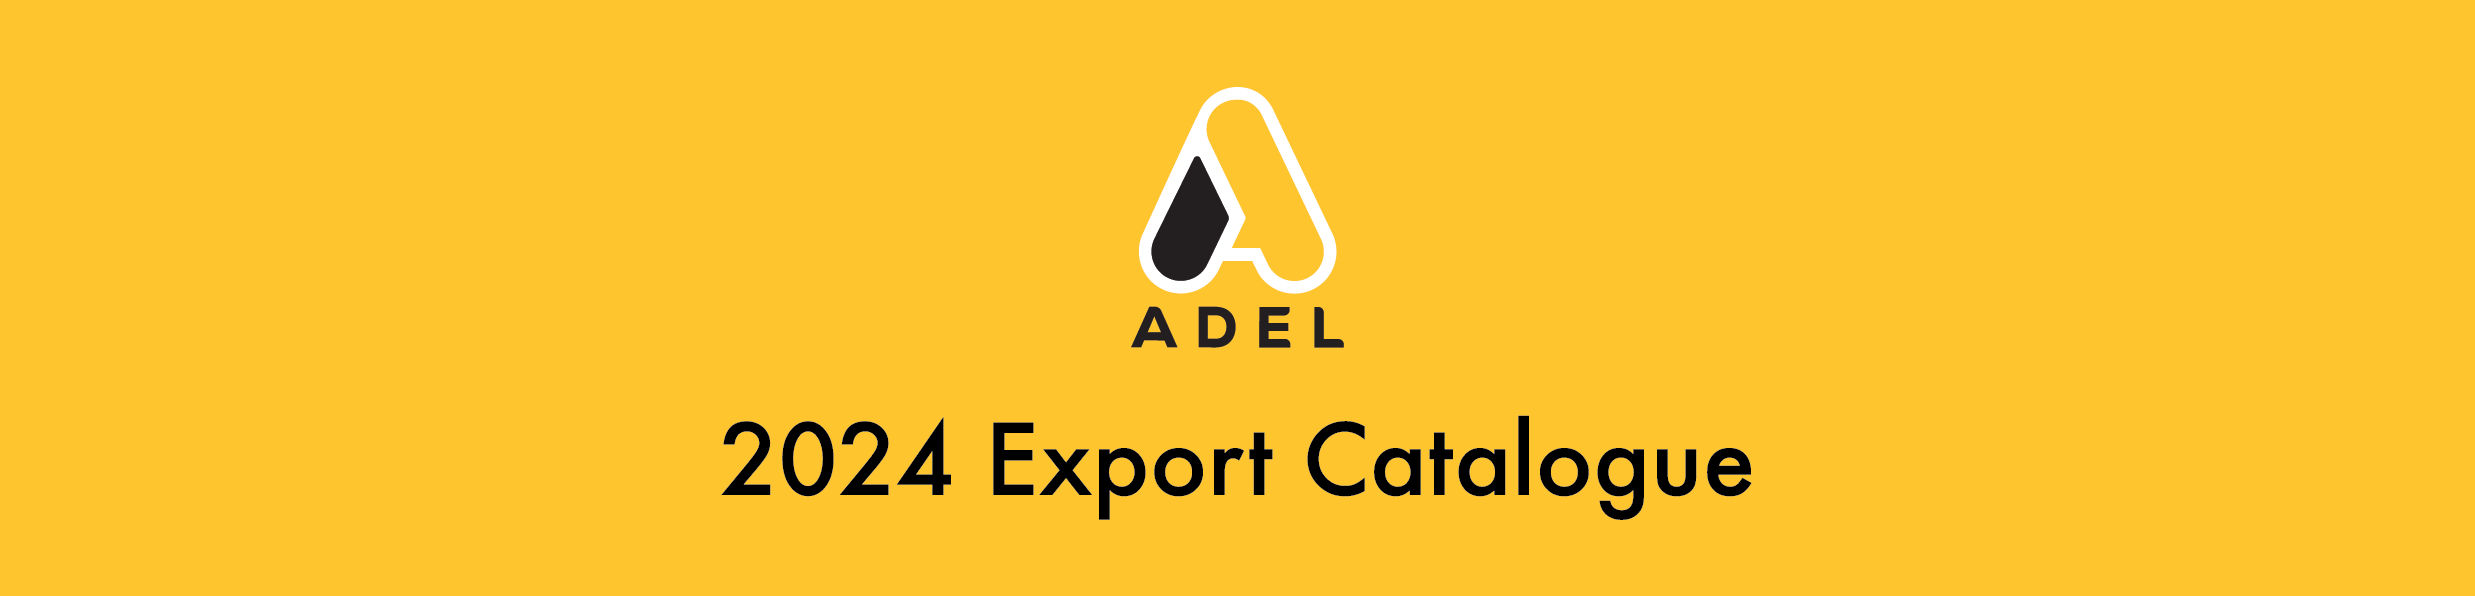 Adel 2024 Export Catalogue